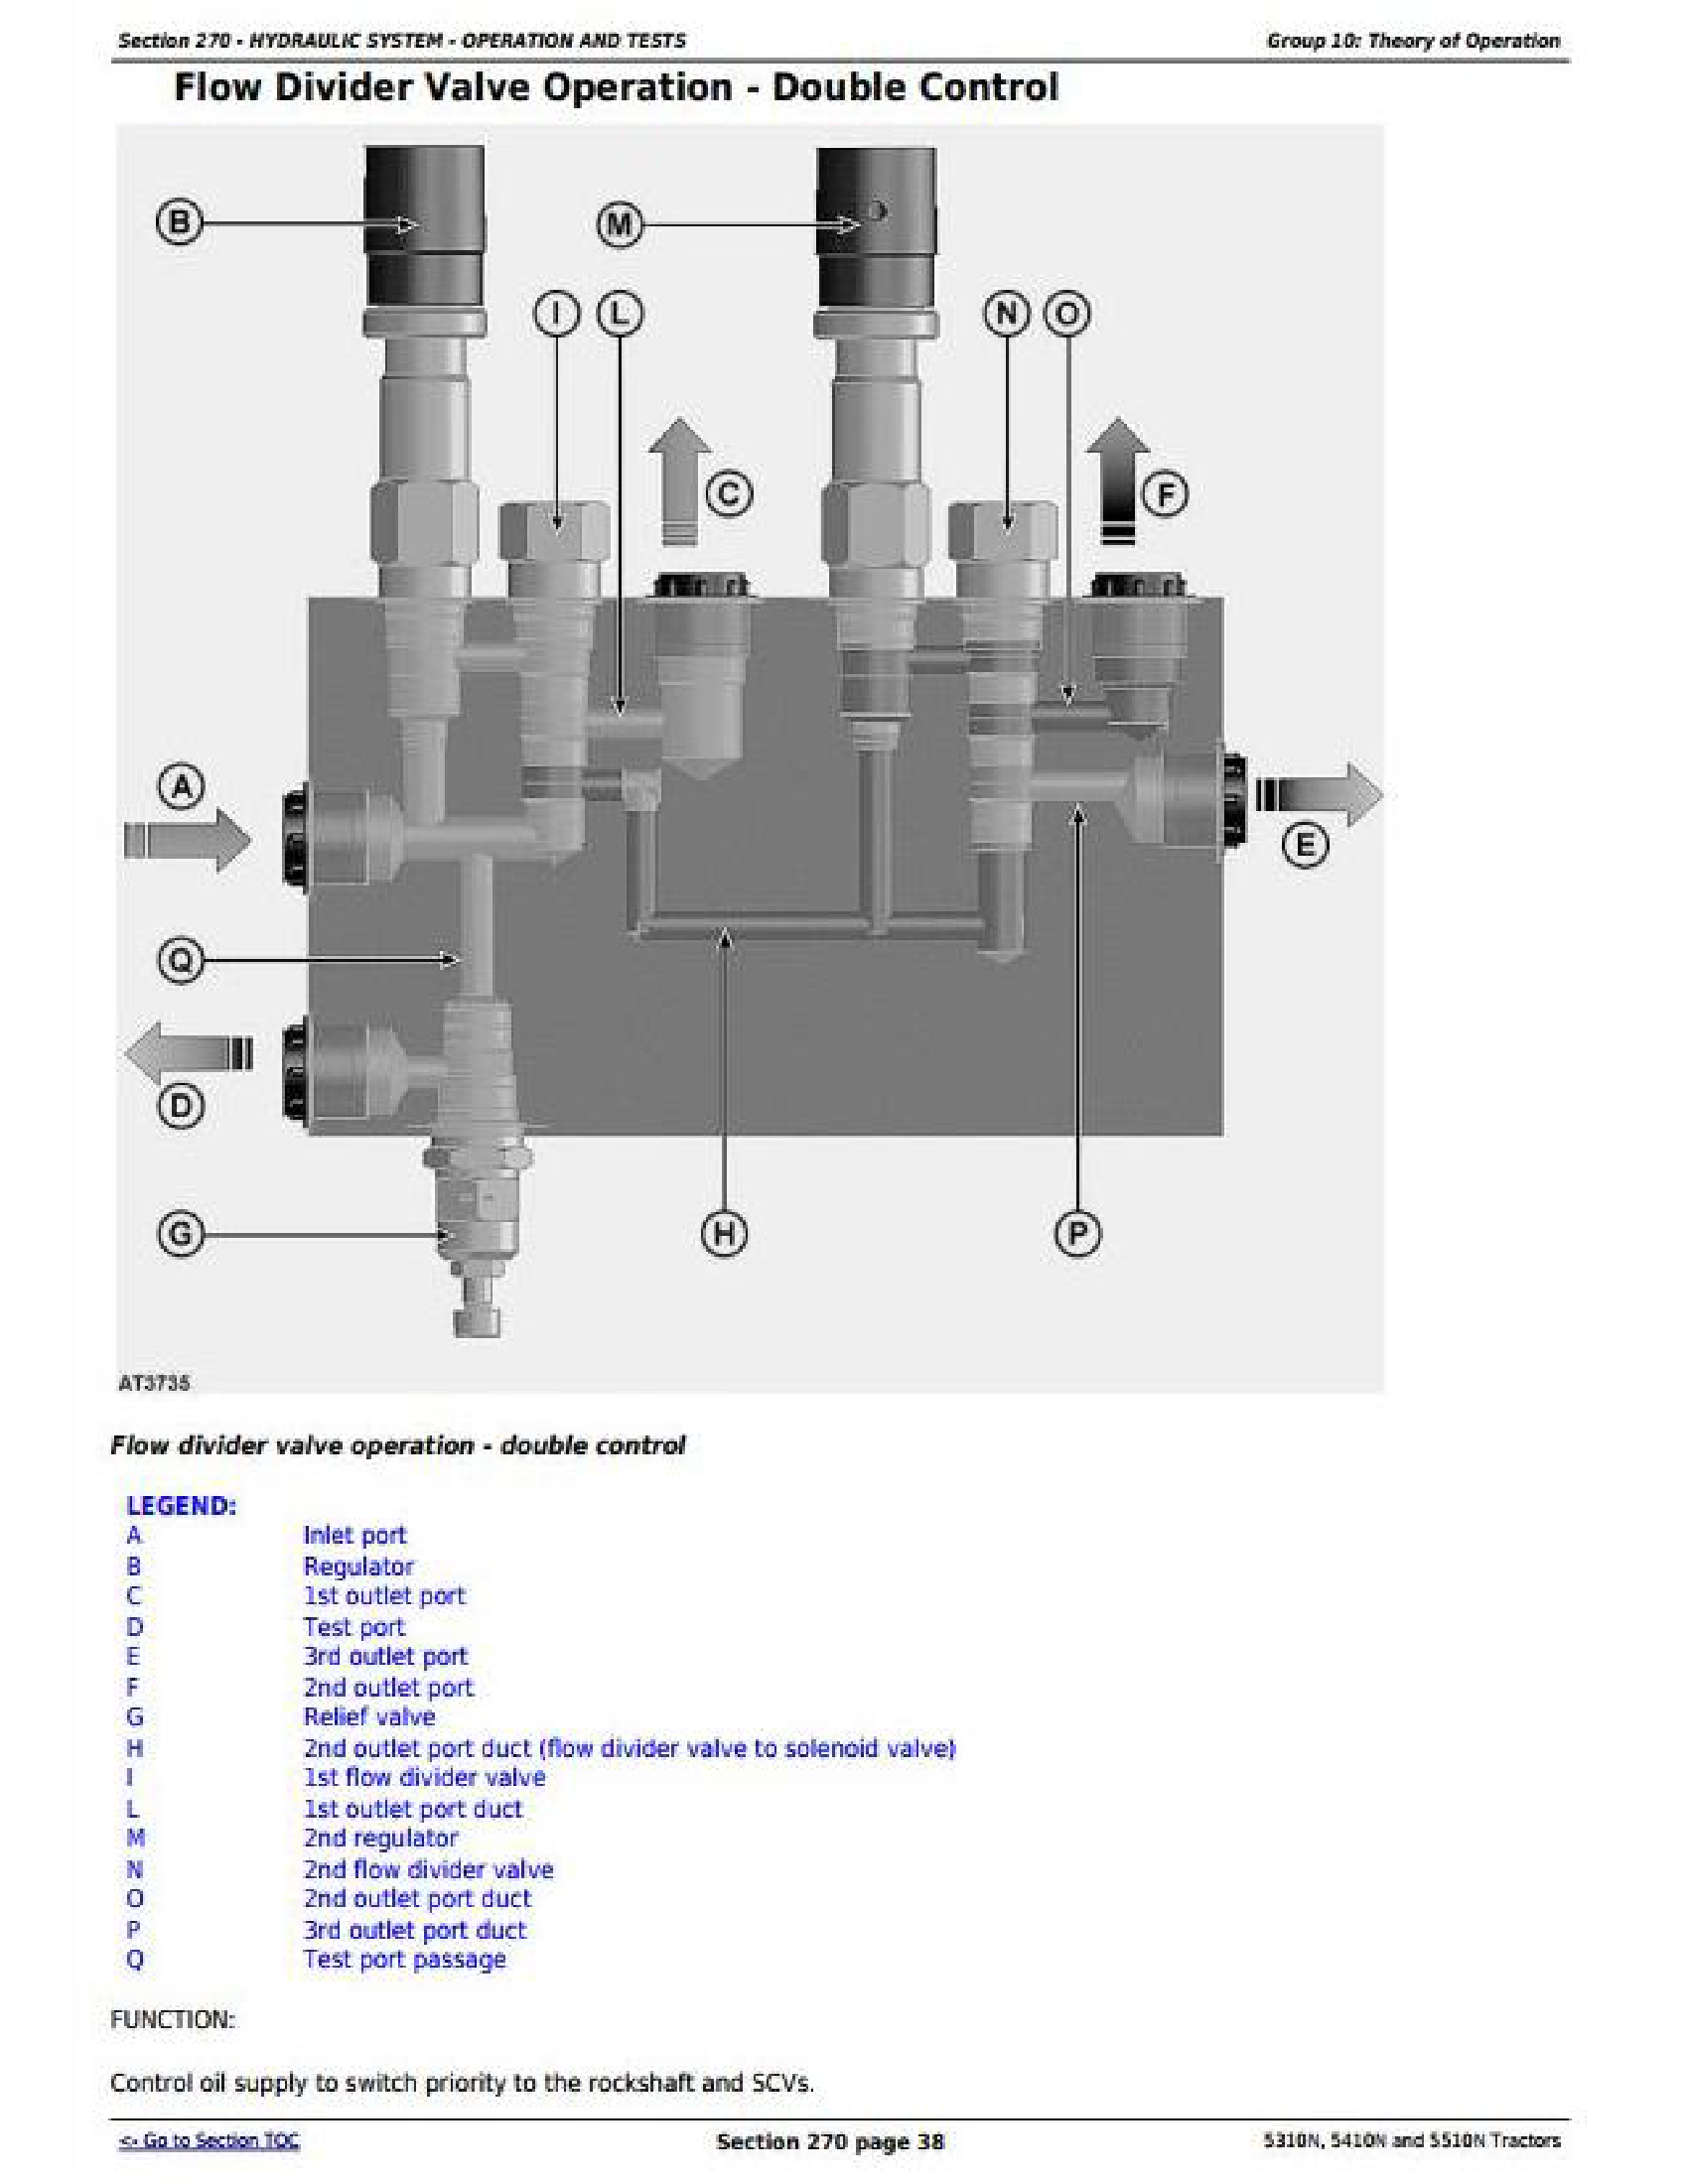 John Deere 5410N manual pdf